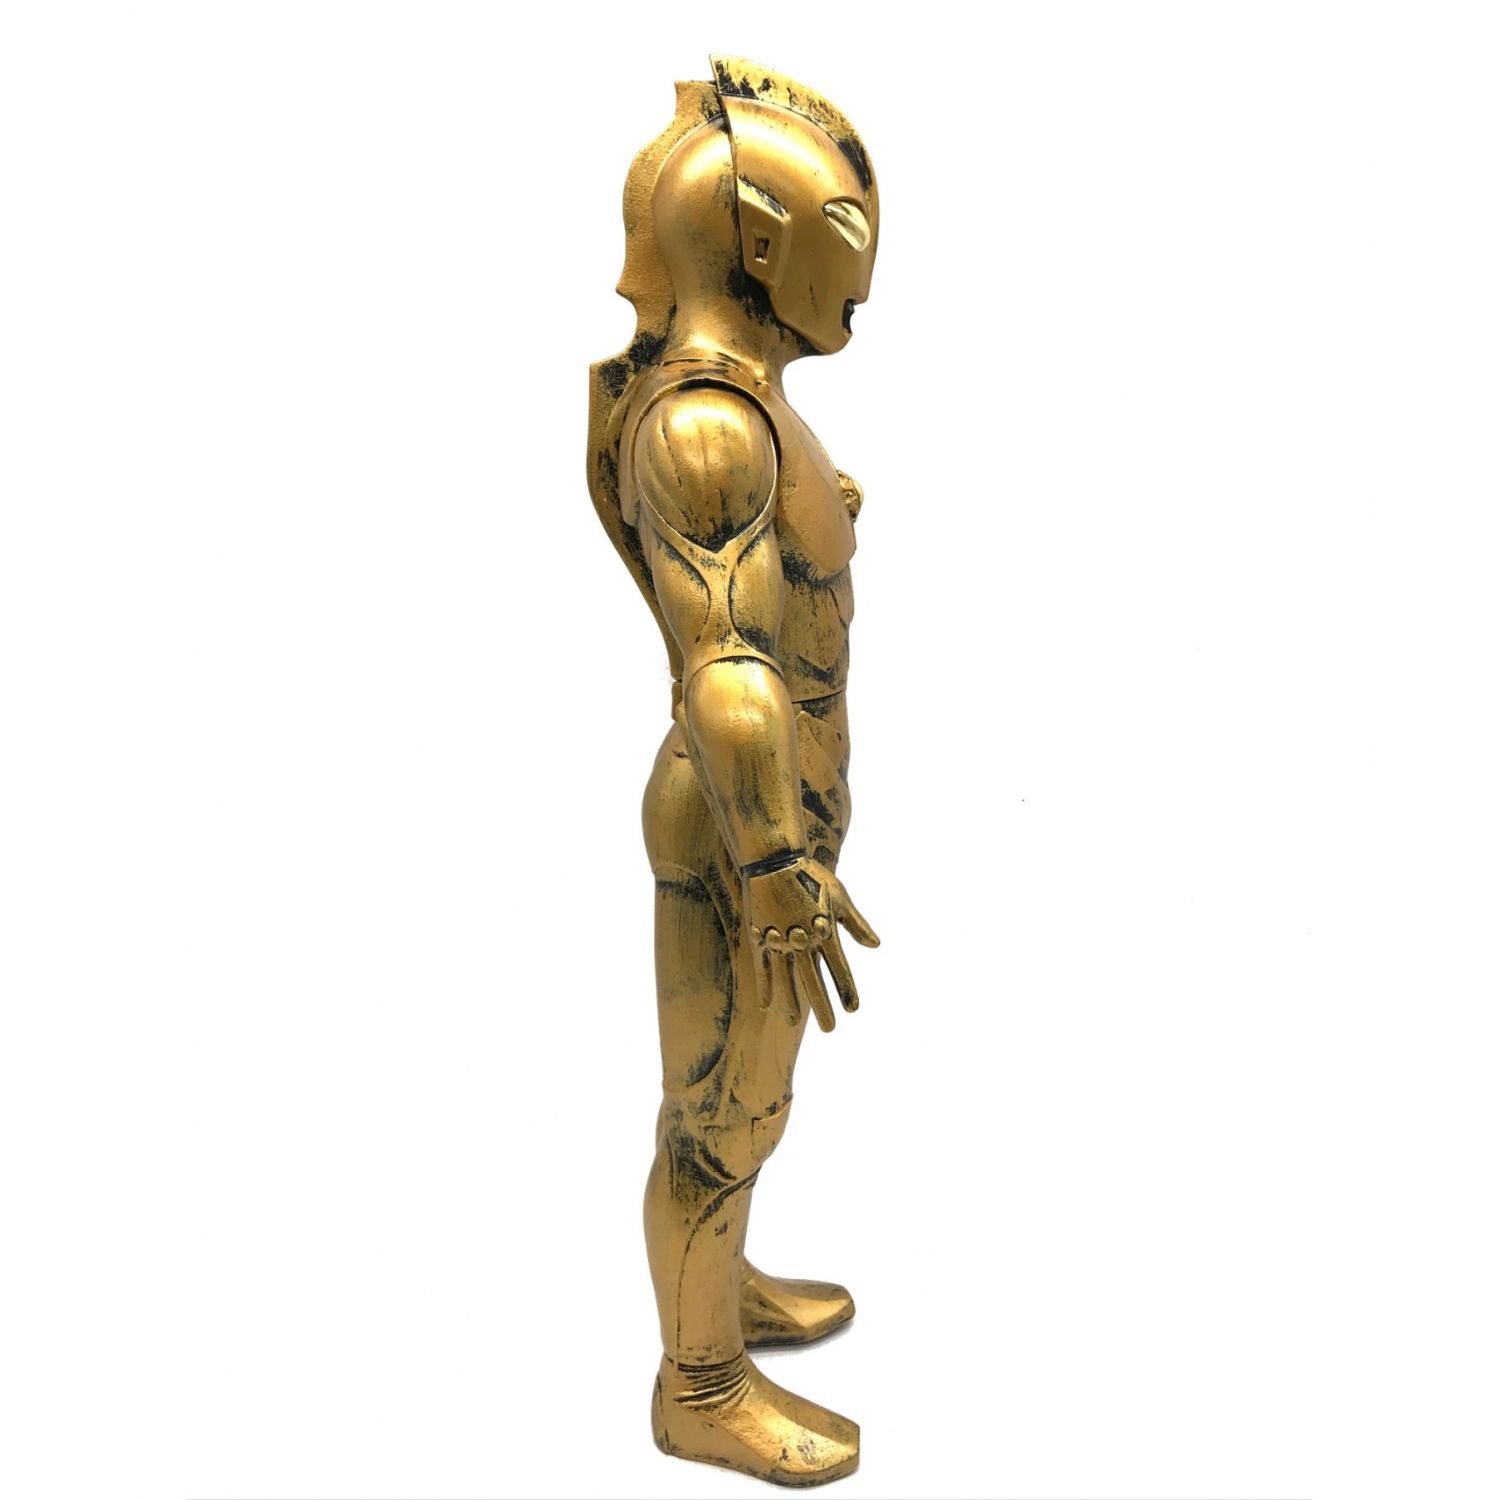 ウルトラセブン 京本コレクション 特別限定版 黄金の巨神像